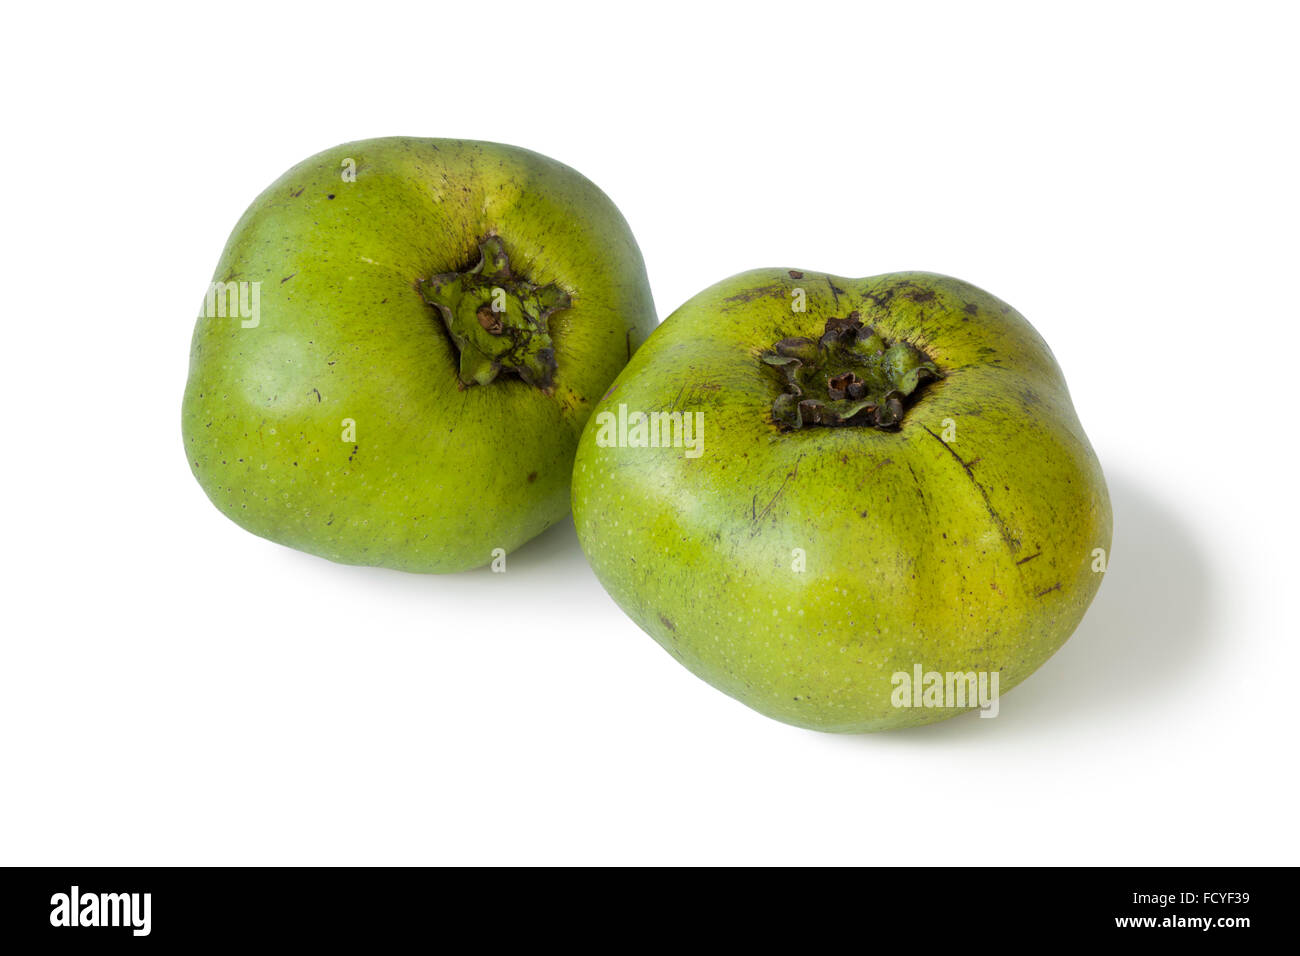 Two fresh black sapote fruit on white background Stock Photo